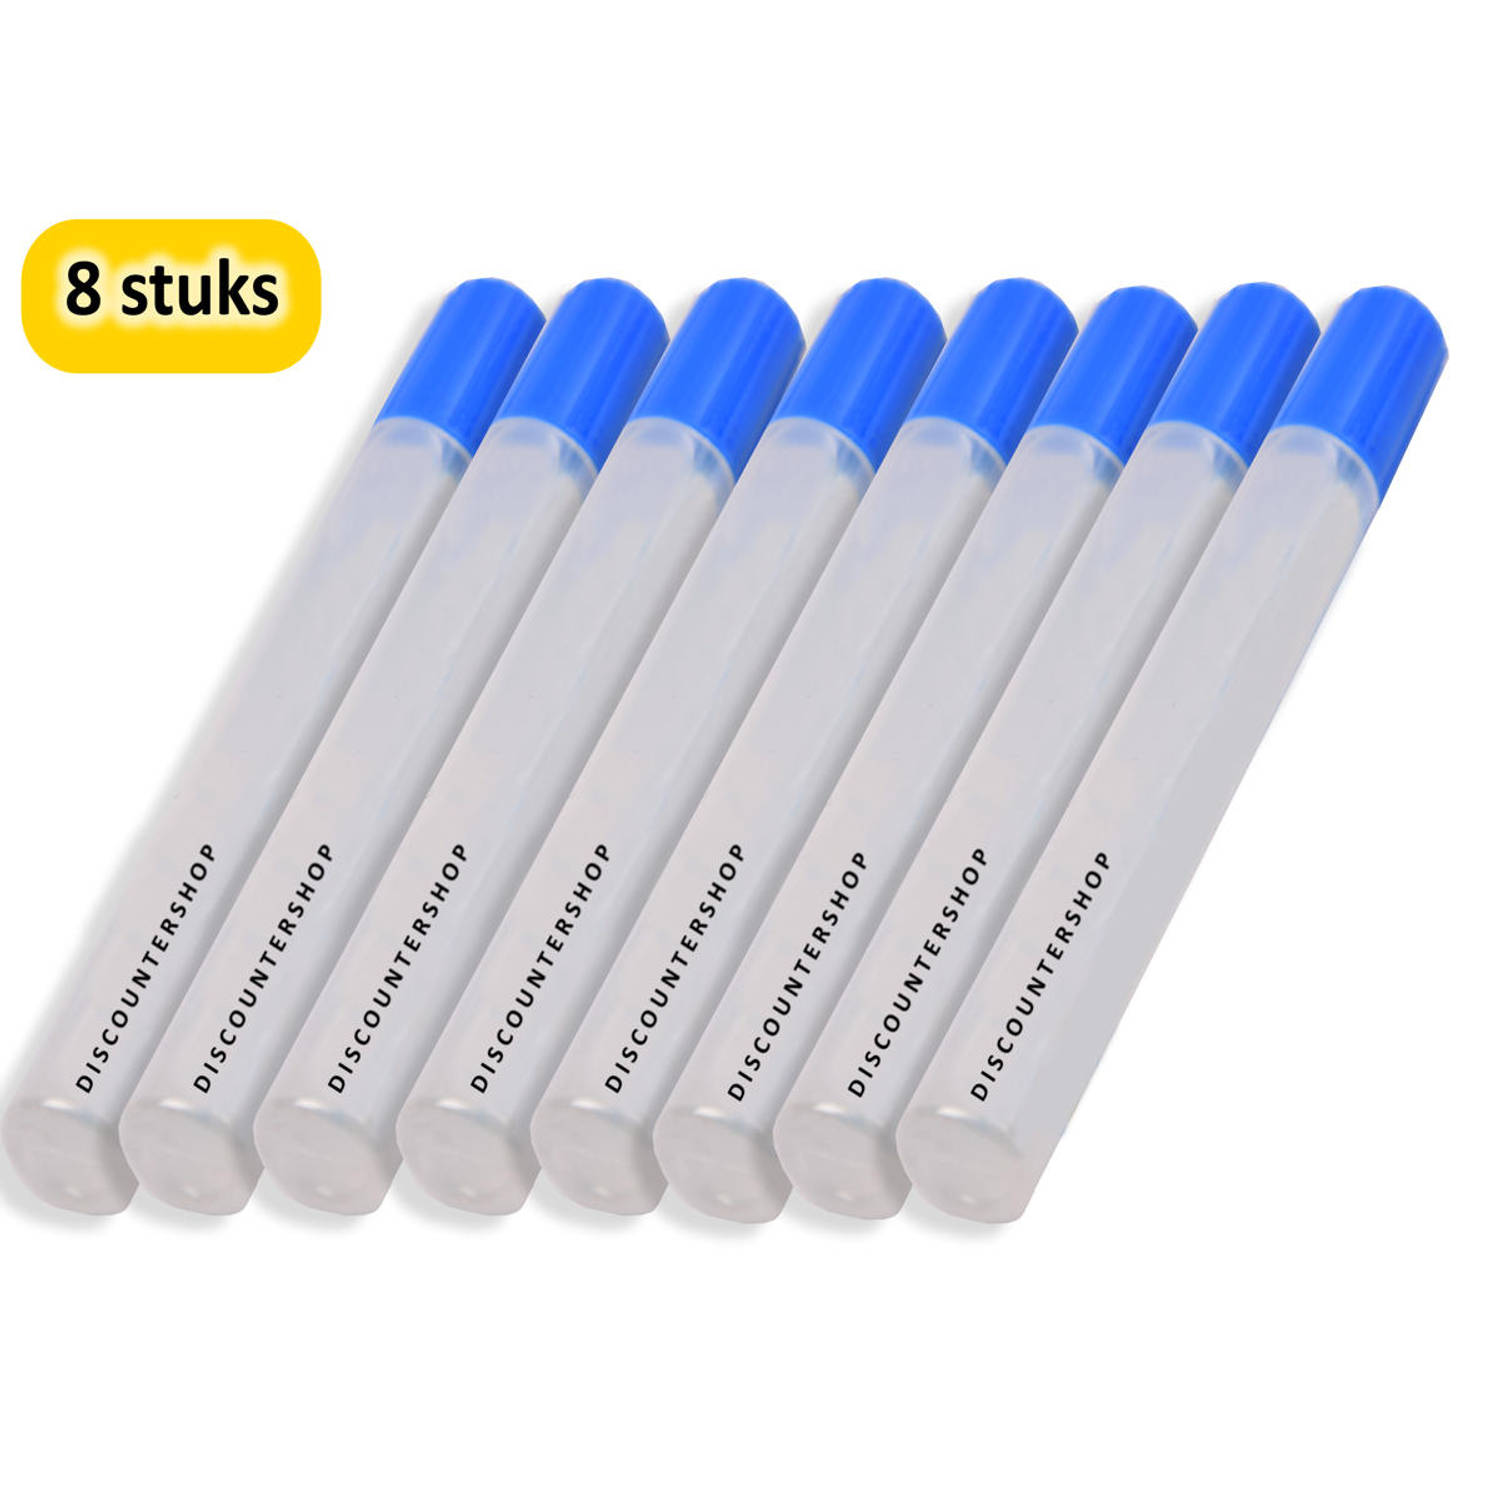 Hobbylijm Glue Pen 50 Gram - 8 Stuks Verpakking - Voor Precisiewerk en Handige Lijmtoepassingen